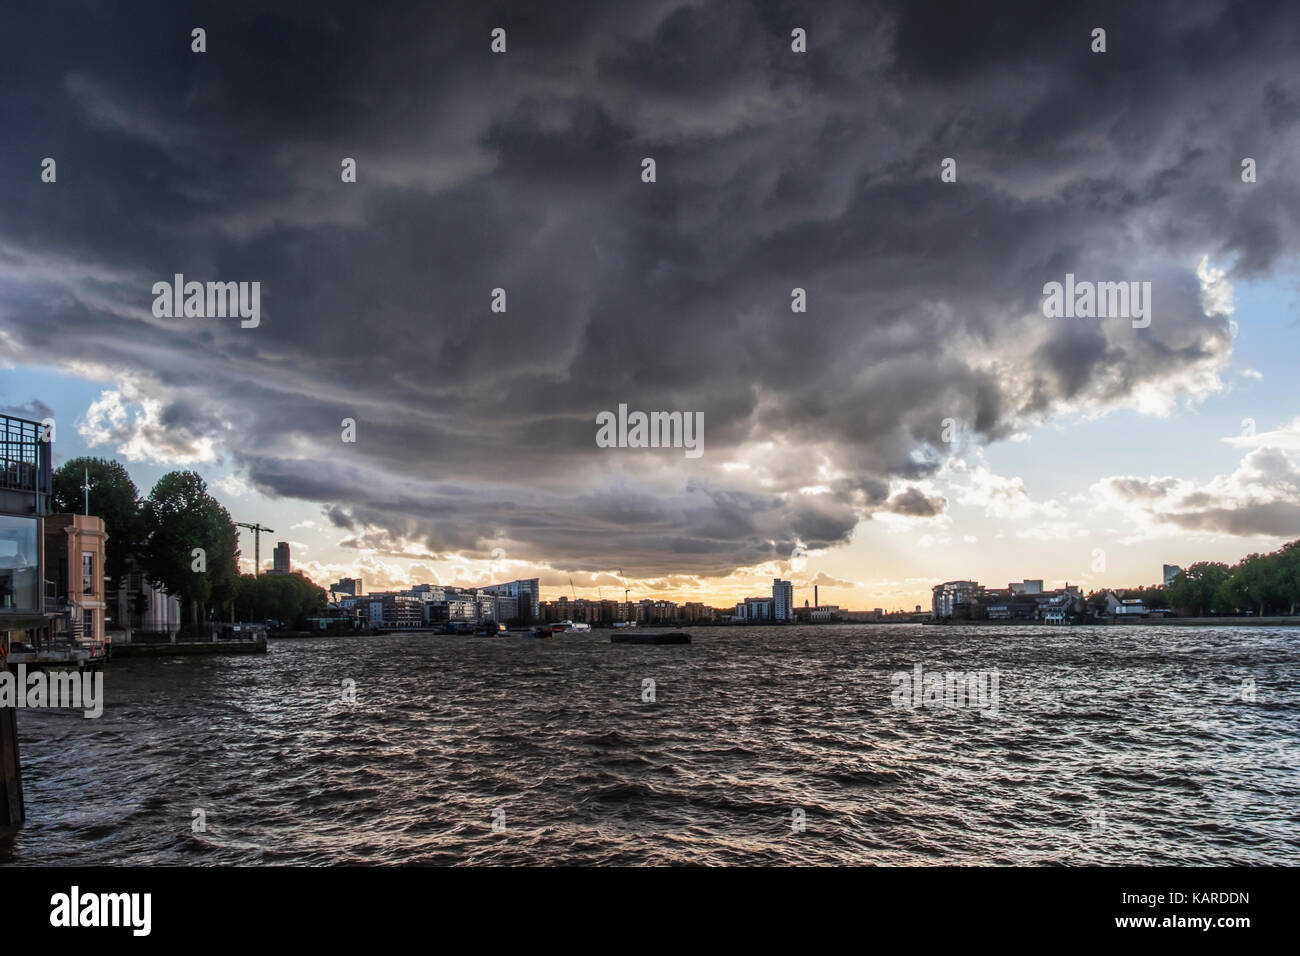 Greenwich, Londres. Rivière Thames view avec le clapot,Stormy Sky noir, black storm clouds.presse Sorm approche,mauvais temps.concept de mauvais moments à venir. Banque D'Images